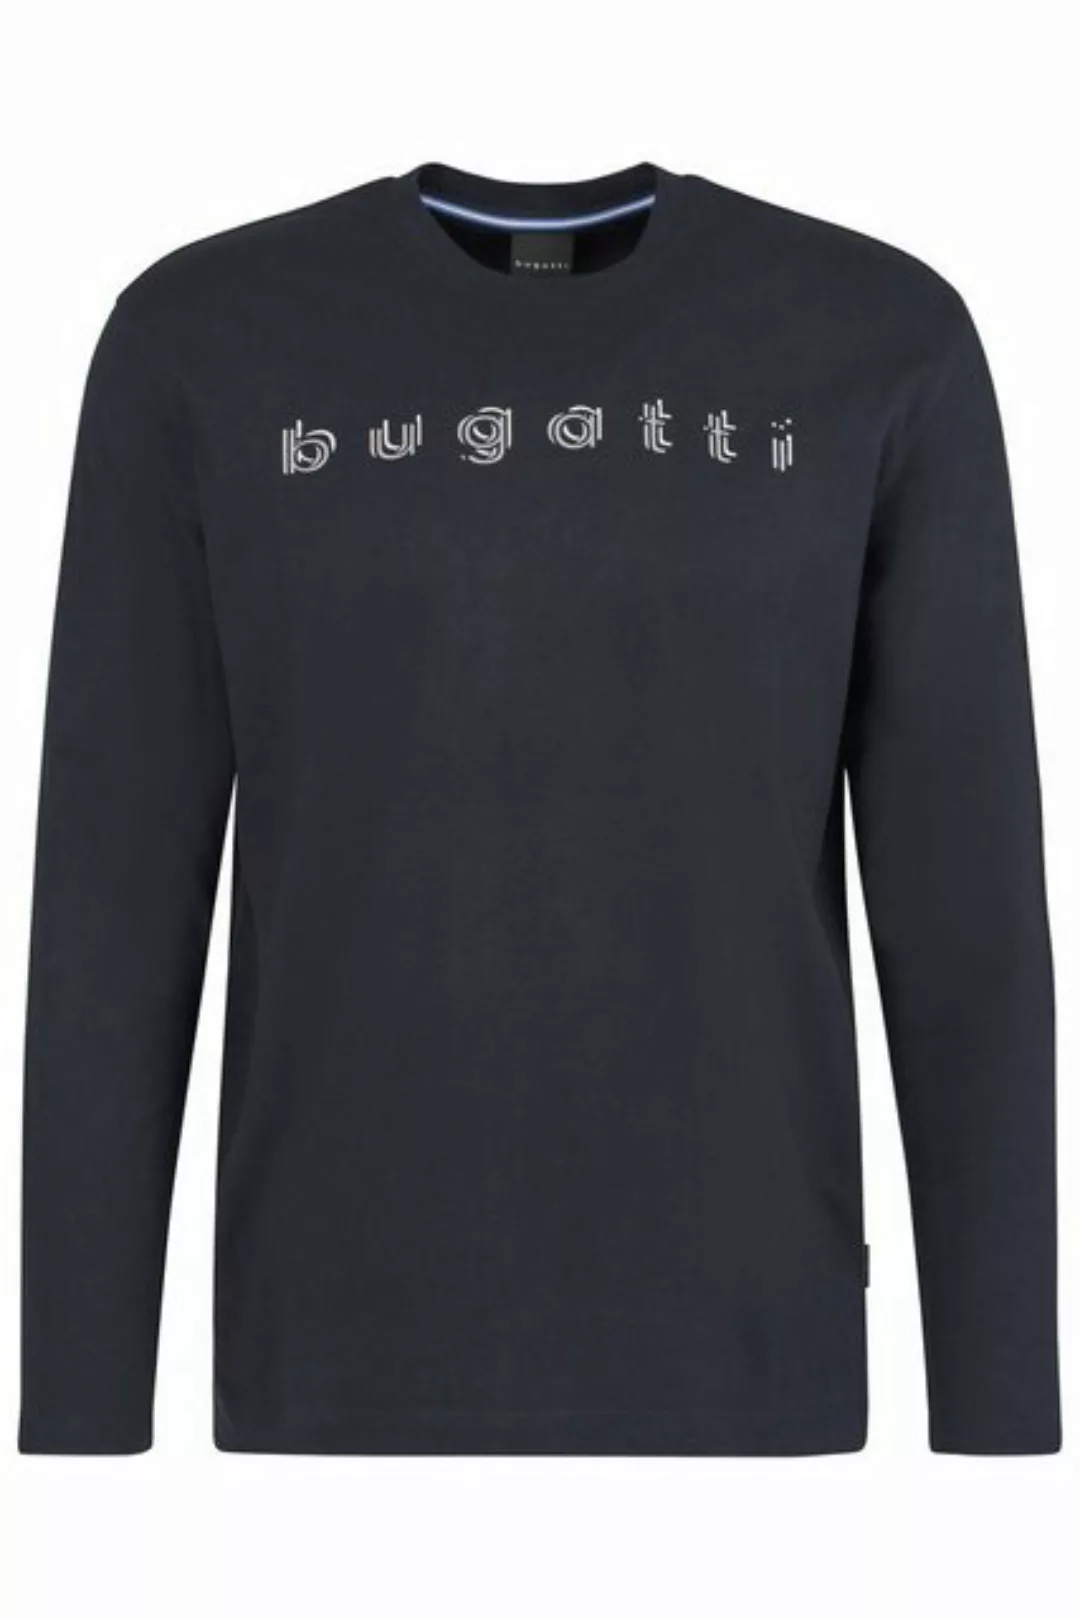 bugatti Longsweatshirt mit bugatti-Druck günstig online kaufen